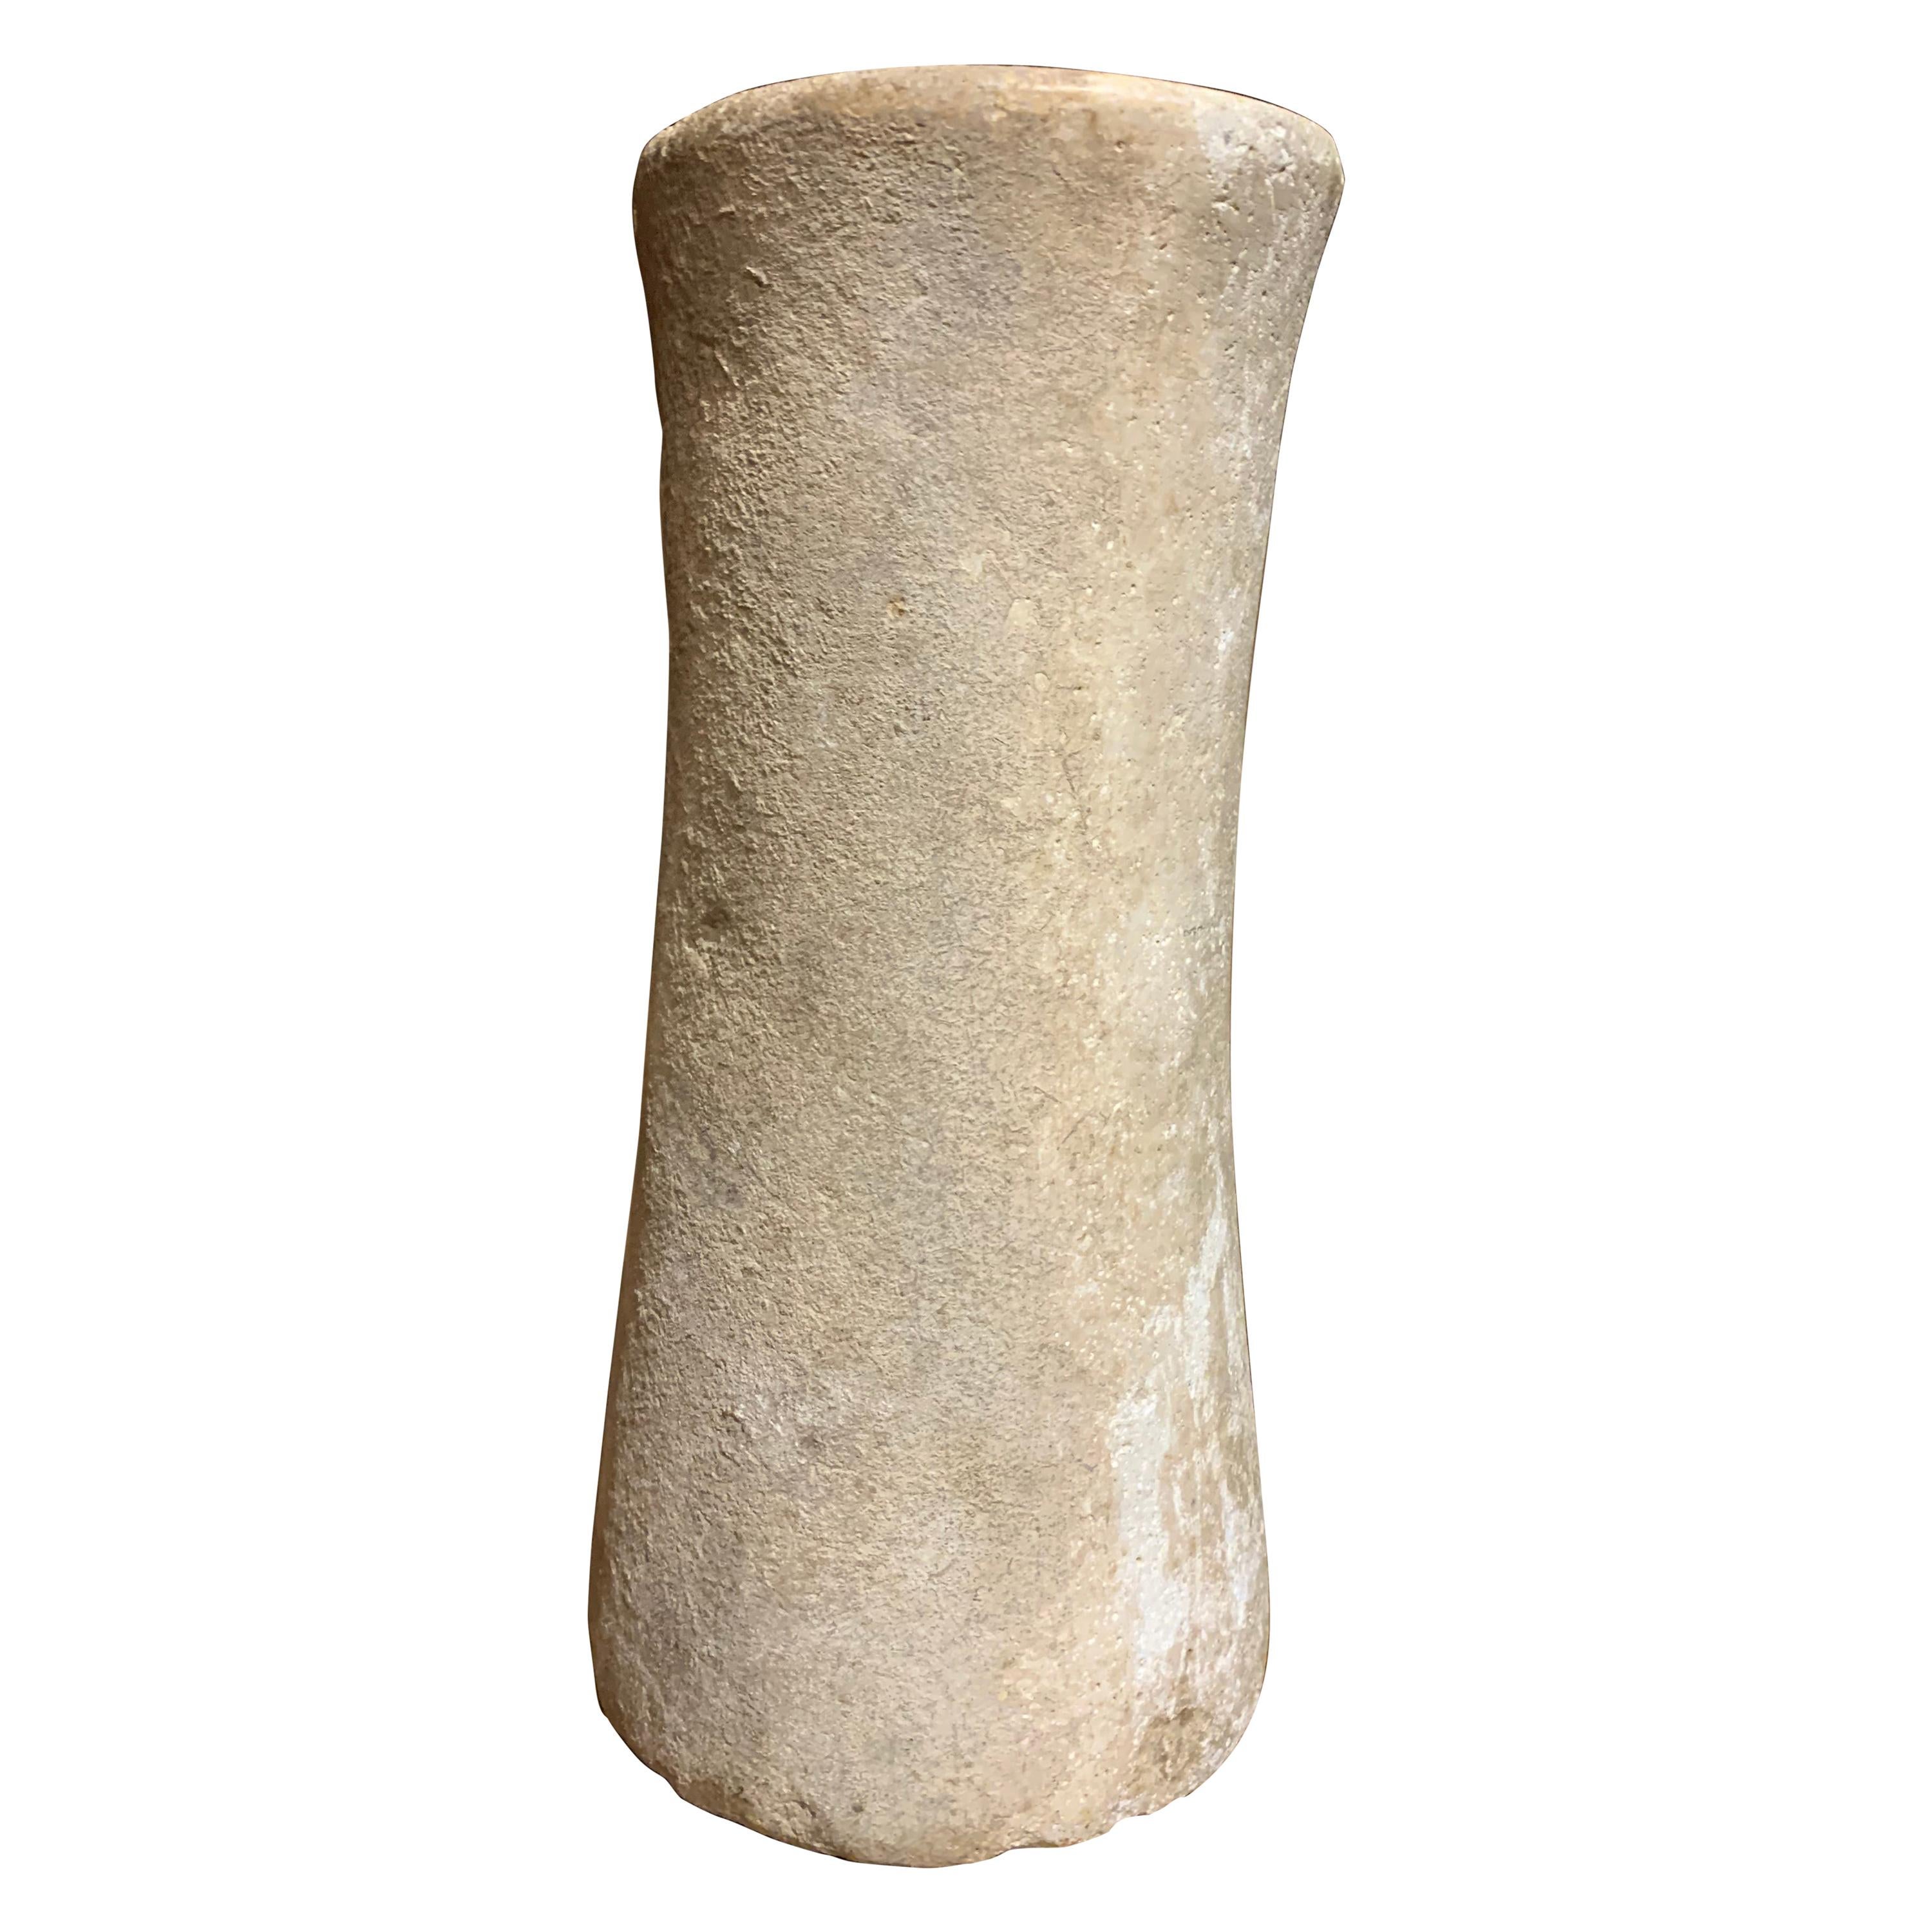 Bactrian Bronze Age Stone Column Idol